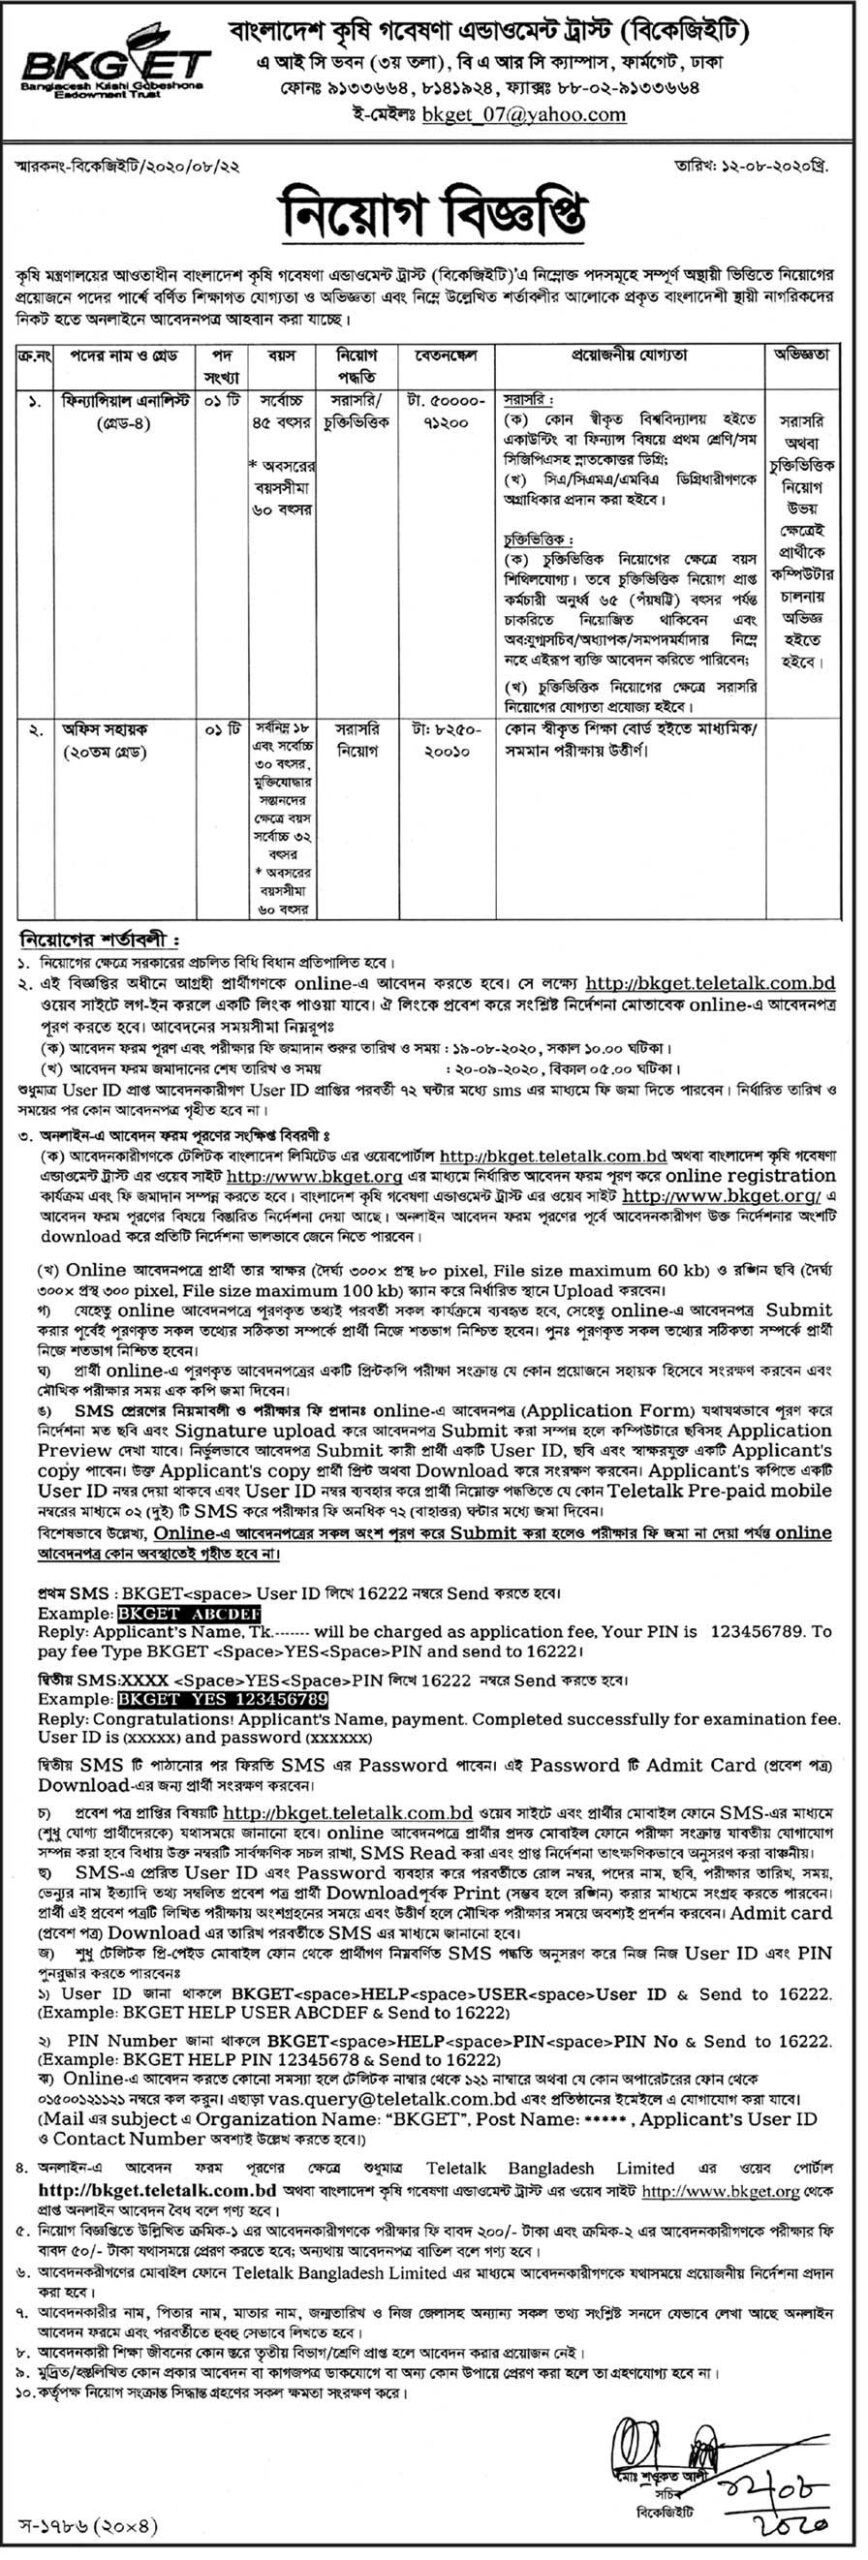 Bangladesh Krishi Gobeshona Endowment Trust Job Circular